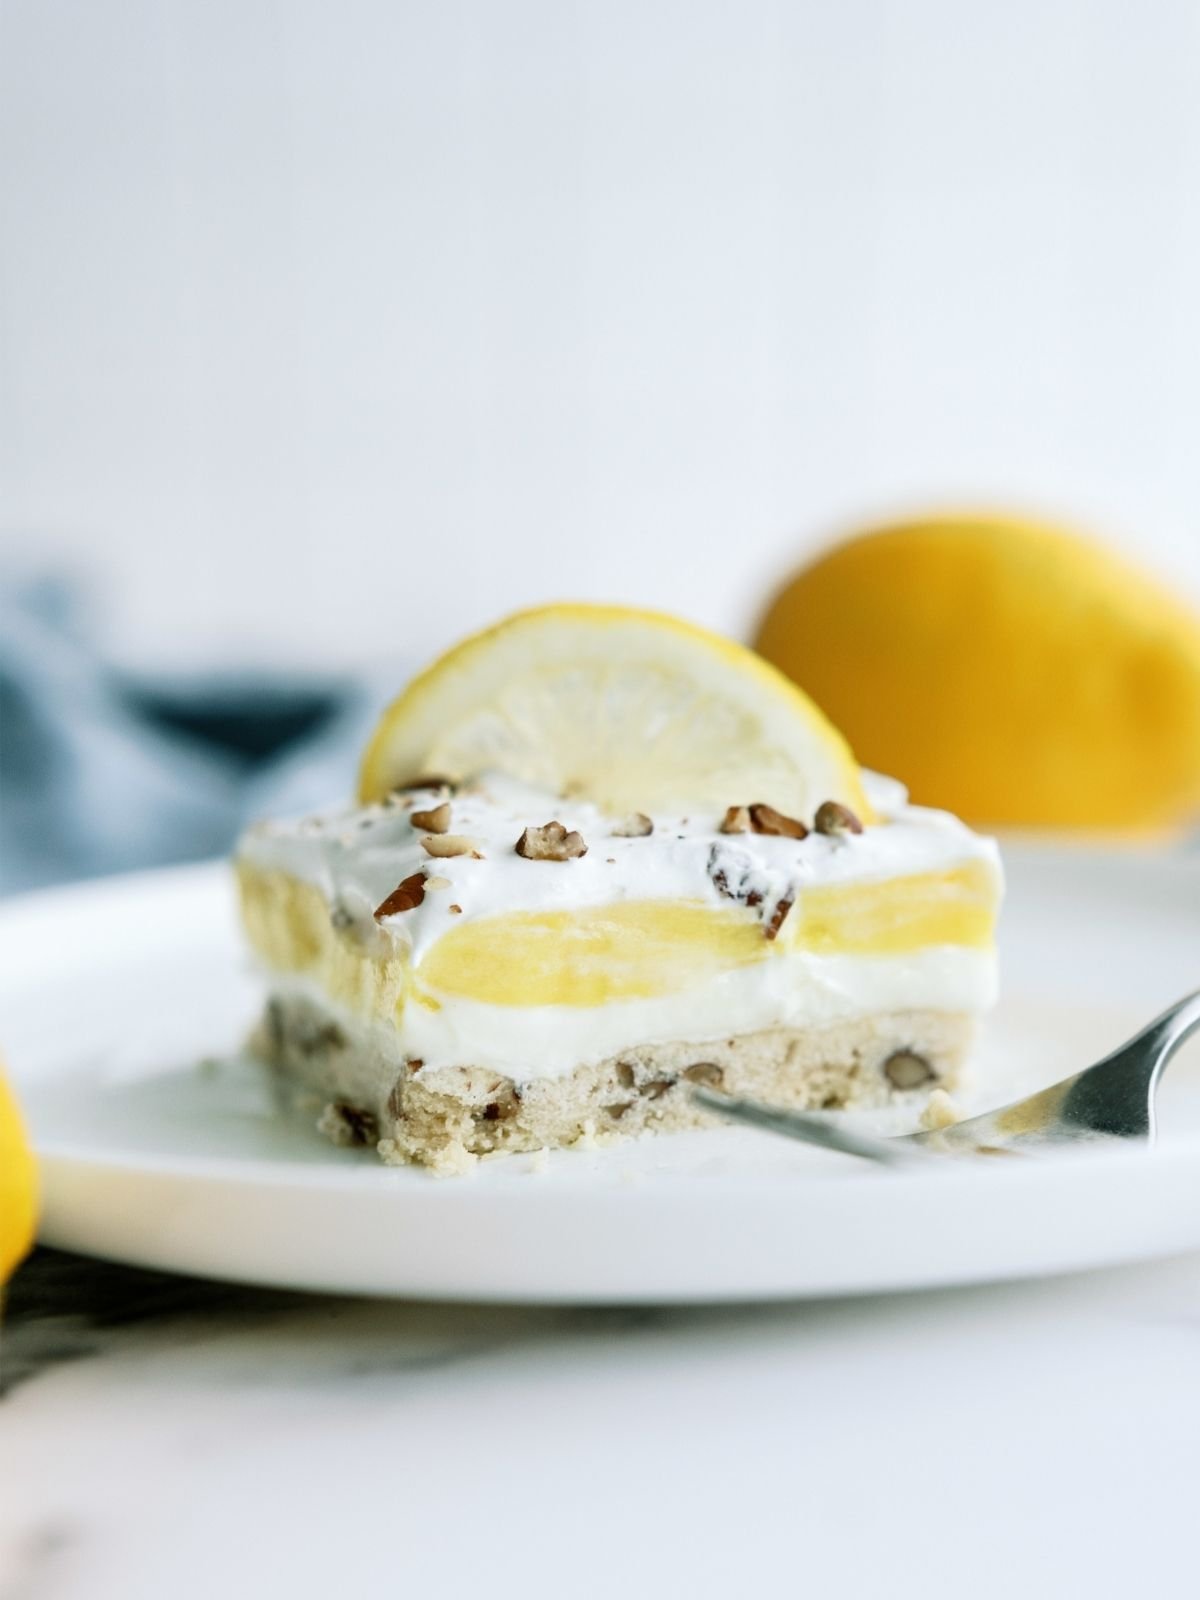 Layered Lemon Dessert (Lemon Delight) Recipe